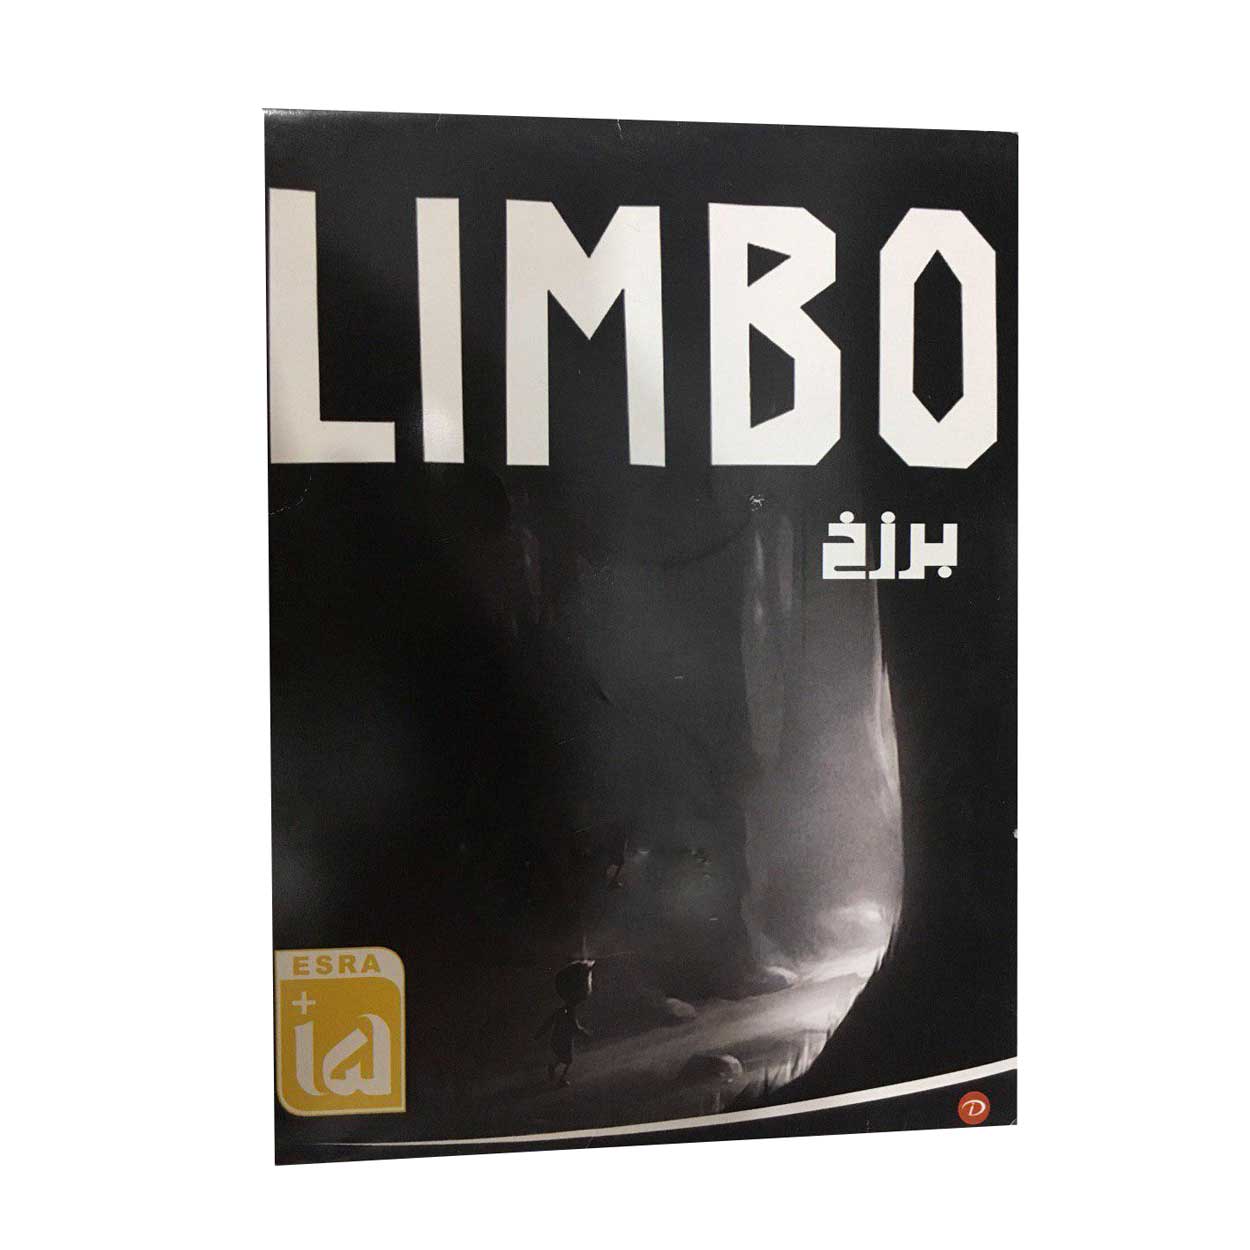 بازی LIMBO مخصوص Pc